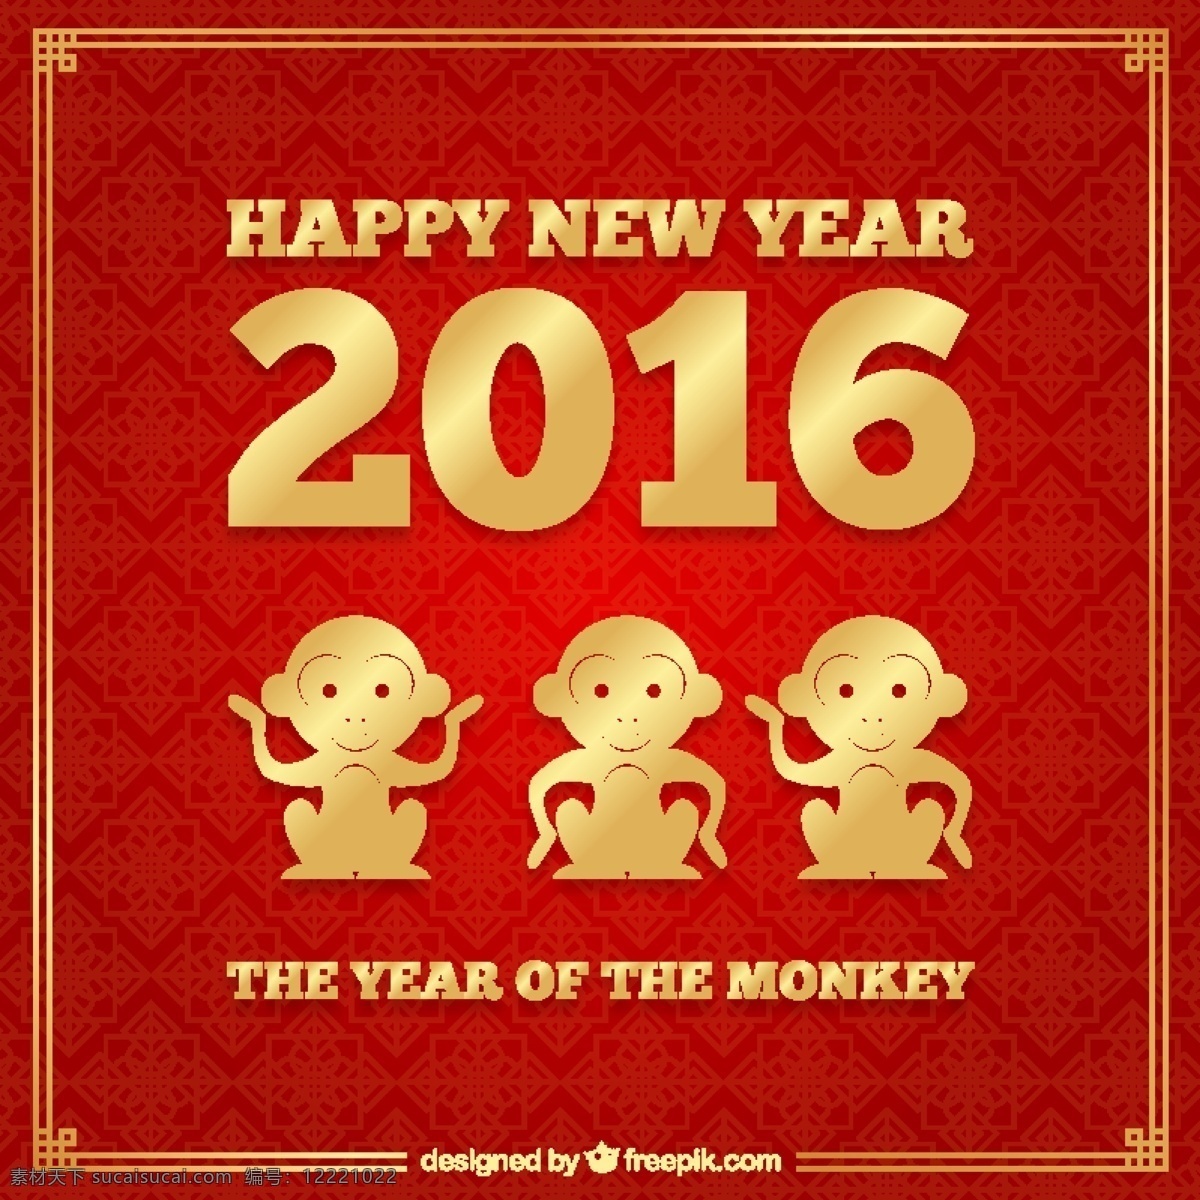 新 年 红色 金色 背景 党 金 新的一年 动物 冬天 快乐 颜色 猴子 中国 庆祝 事件 节日 2016 黄金 东方